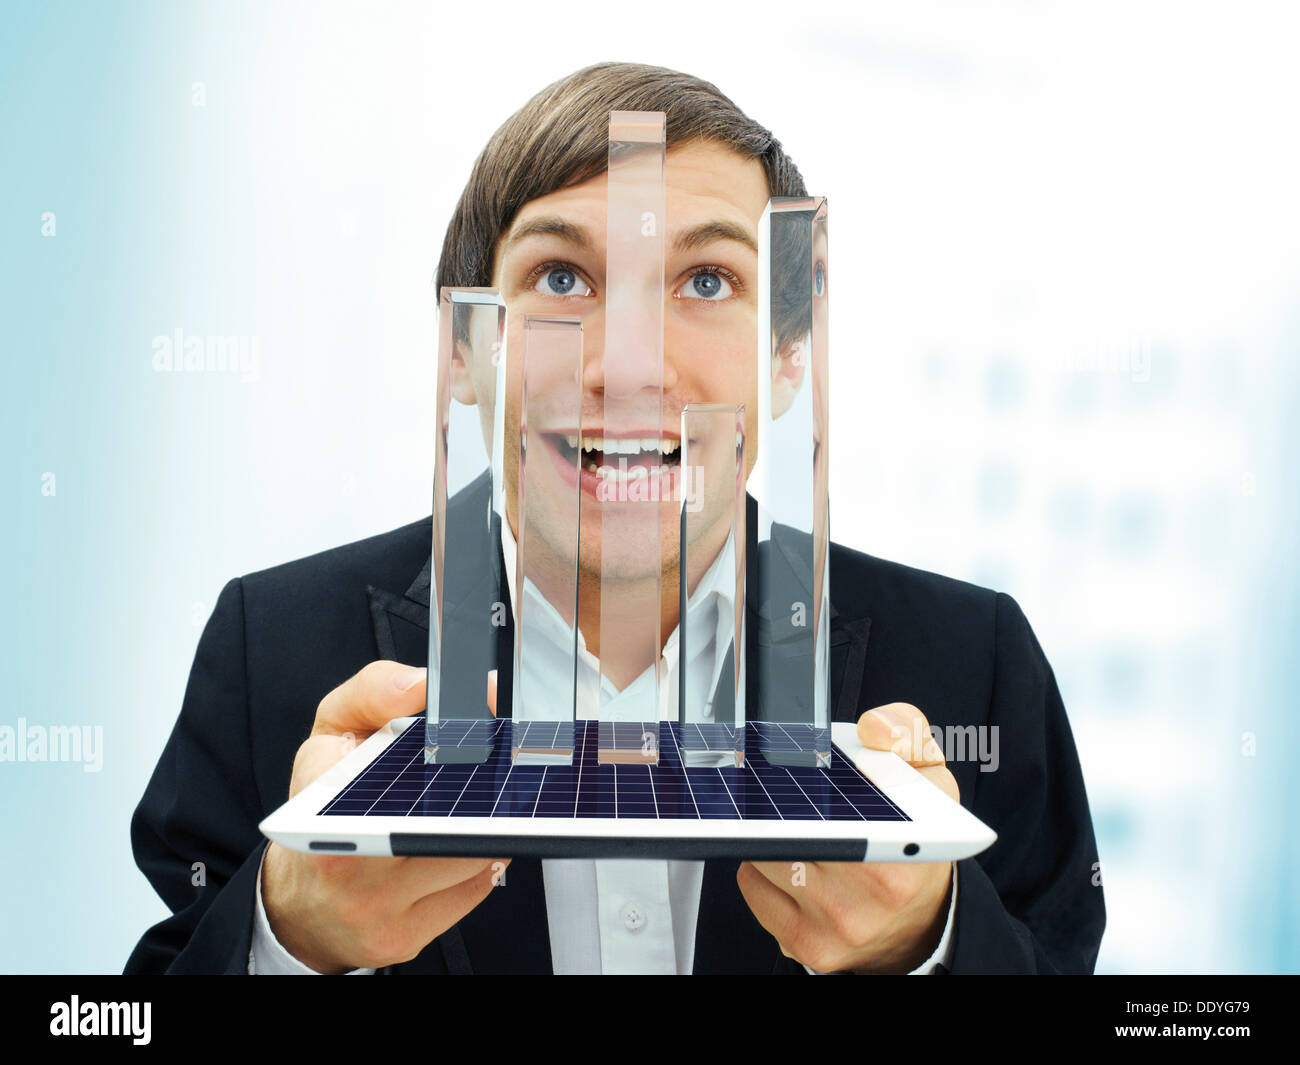 Feliz empresario sosteniendo un iPad con un gráfico de barras vidriosas, imagen simbólica para la economía, el crecimiento, la ganancia, la recuperación económica Foto de stock